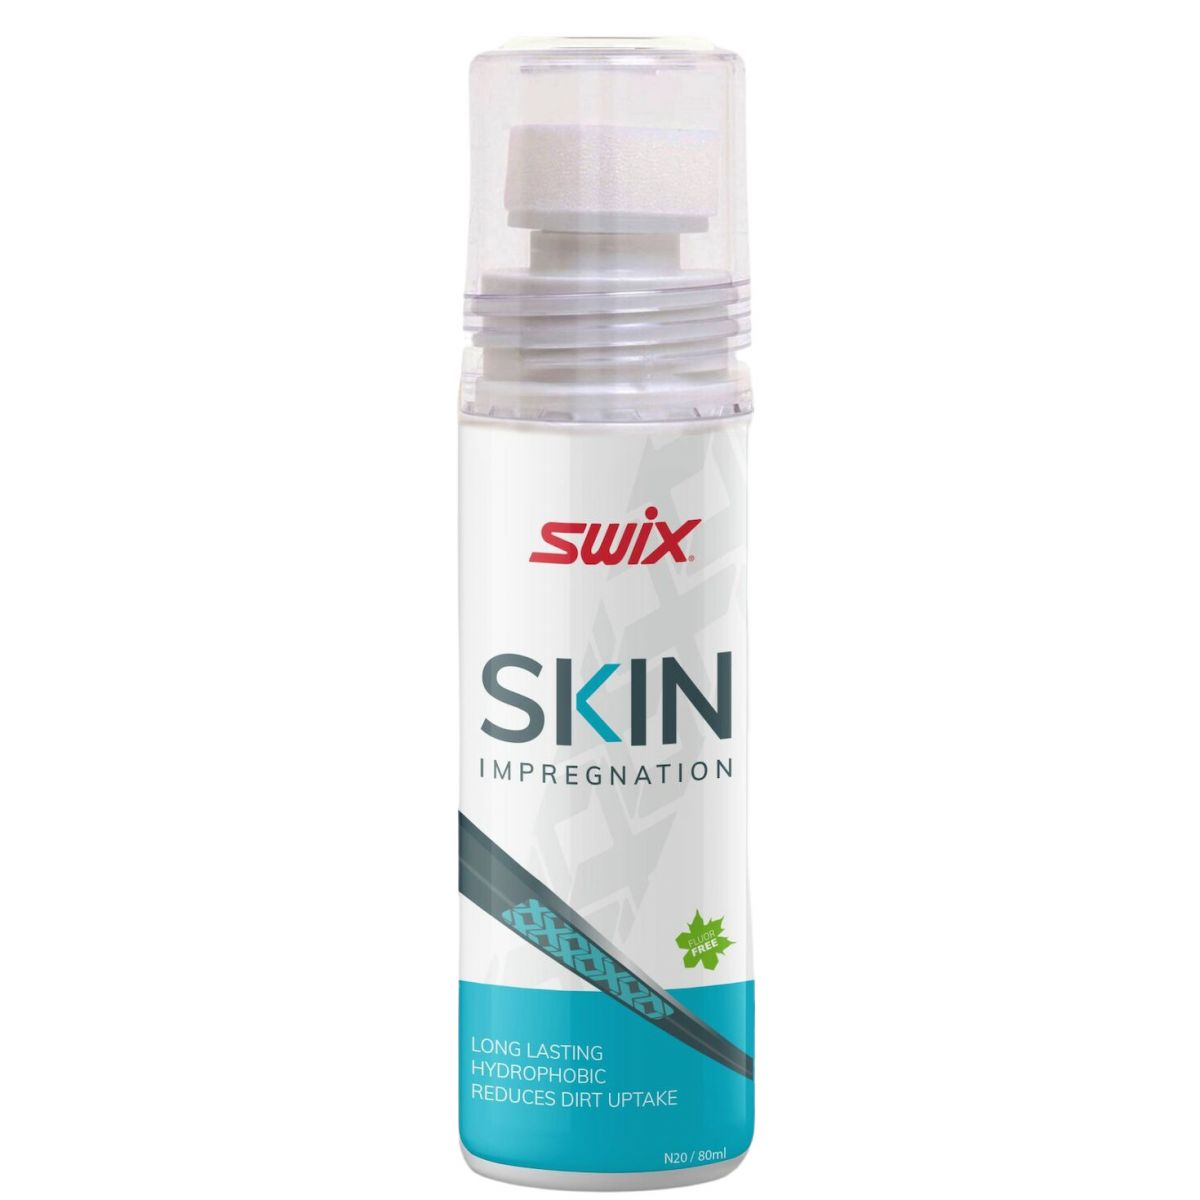 Billede af Swix Skin Impregnation, cleaner, 80ml hos Skisport.dk